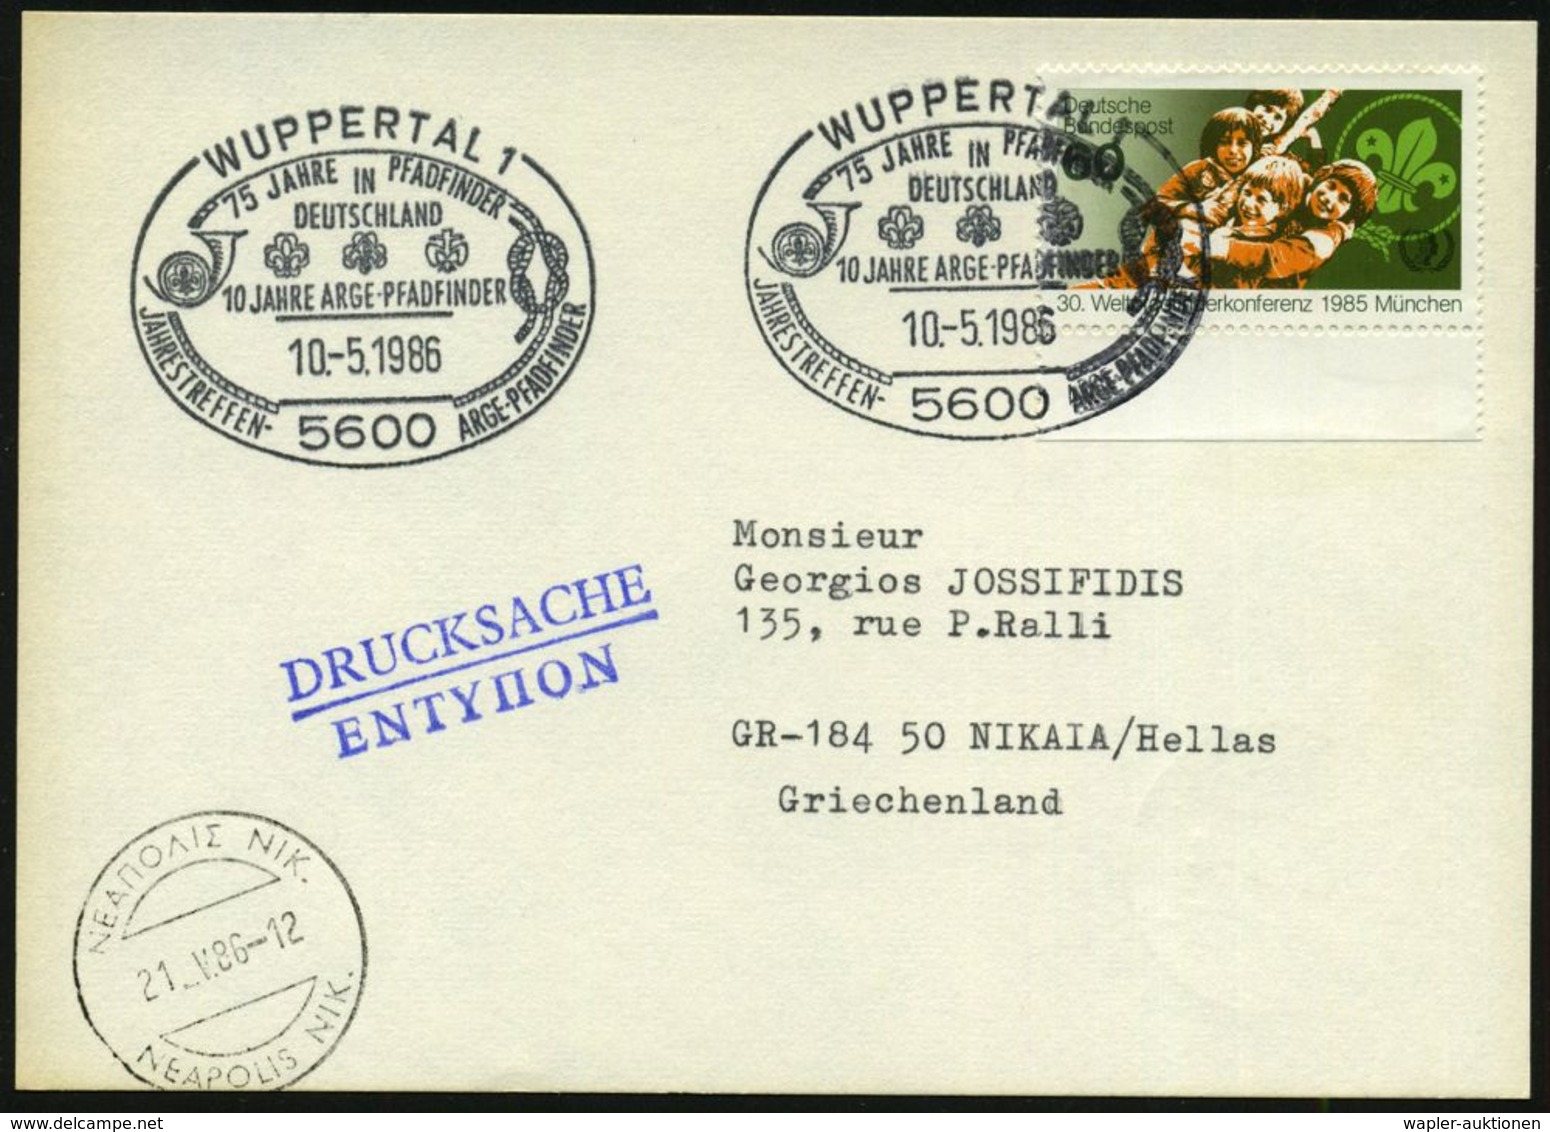 5600 WUPPERTAL 1/ 75 JAHRE PFADFINDER/ IN/ DEUTSCHLAND.. 1986 (10.5.) SSt Auf EF 60 Pf. Welt-Jamboree, München (Mi.1254  - Covers & Documents